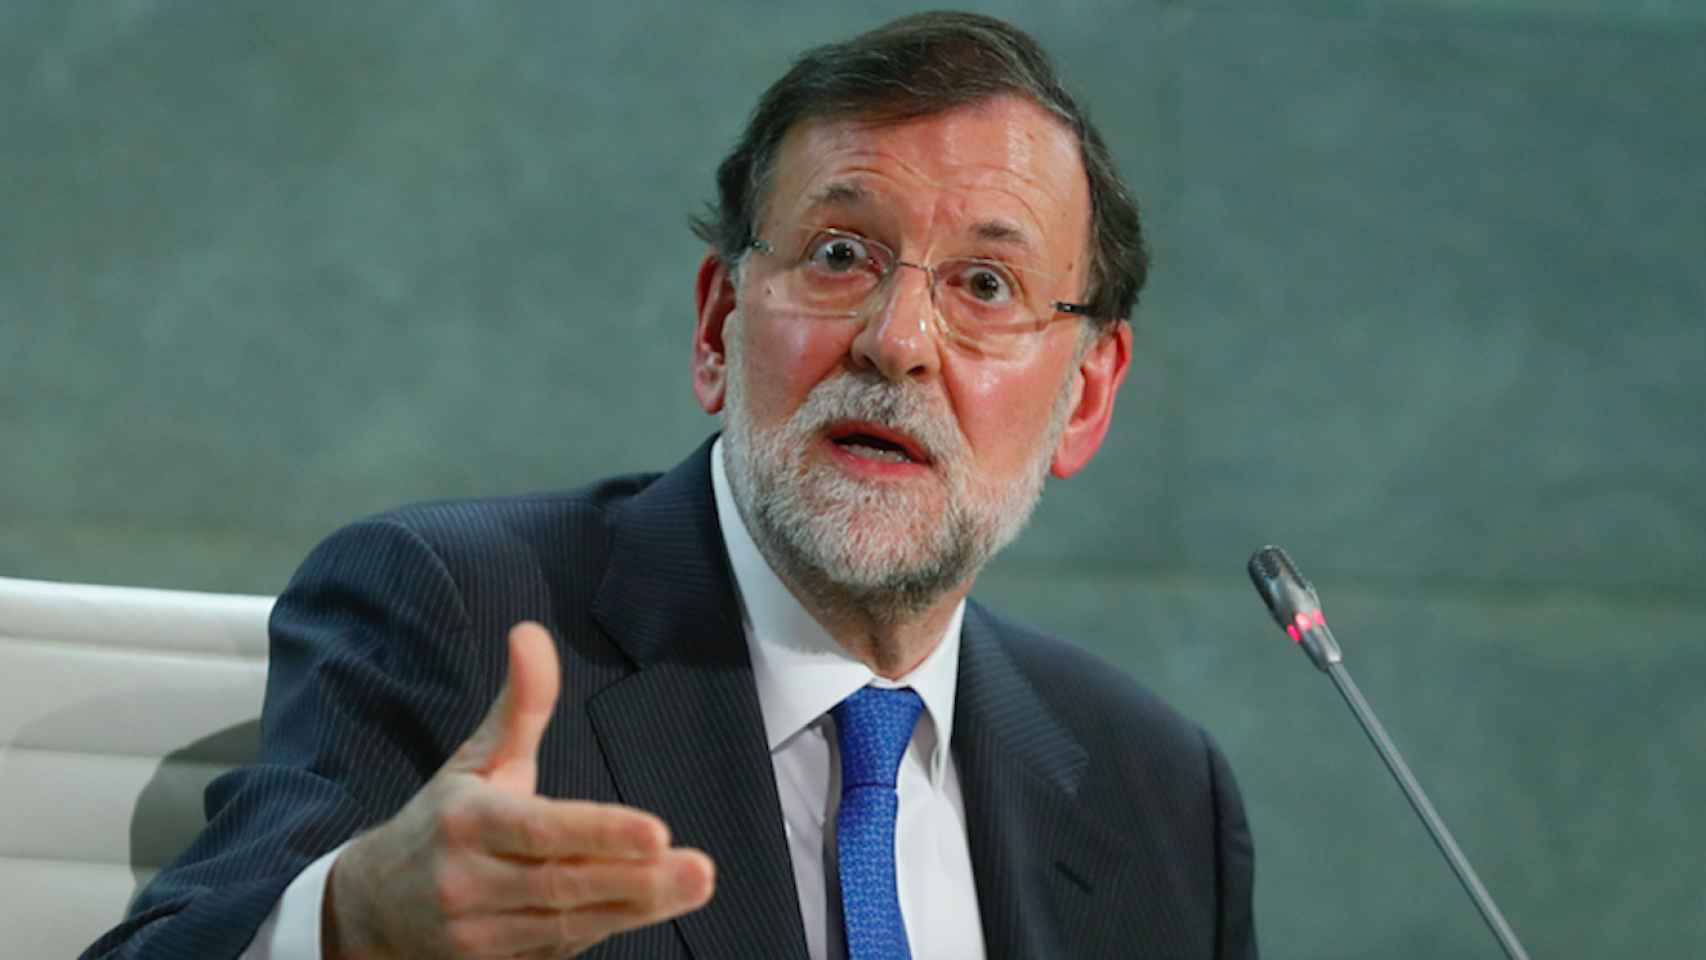 Mariano Rajoy se salta el confinamiento para hacer deporte al aire libre / AGENCIAS